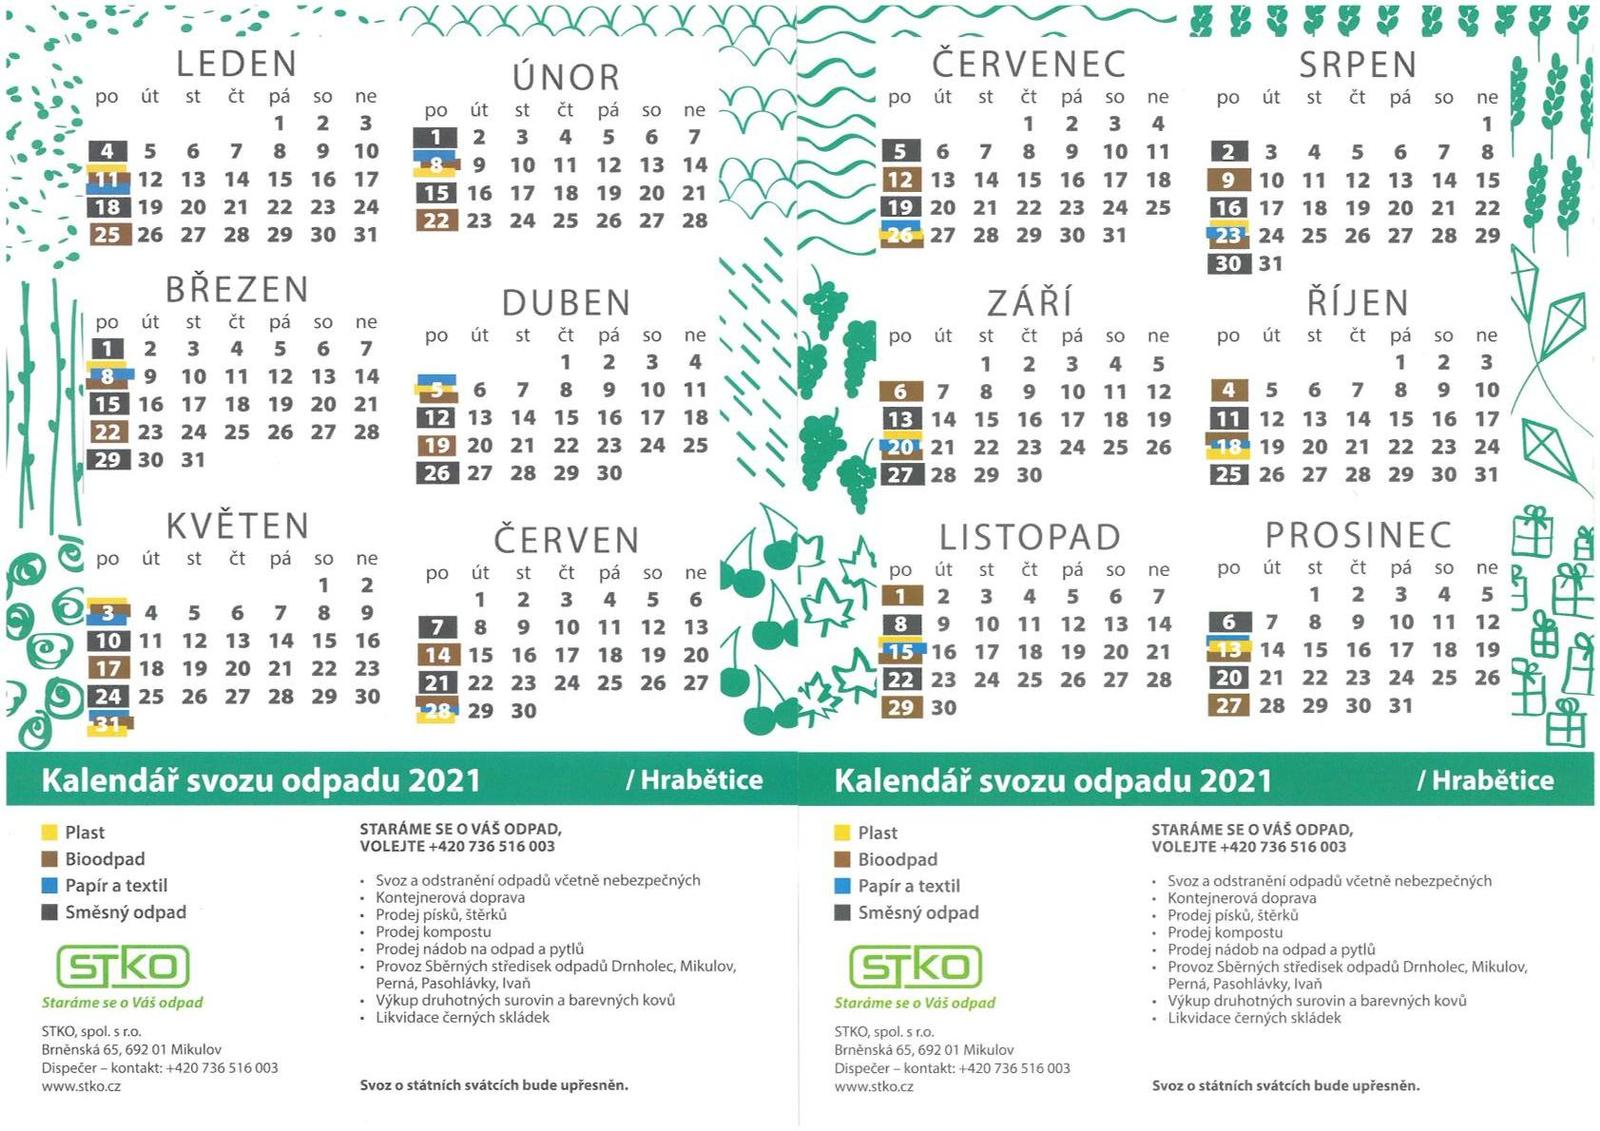 Kalendář svozu odpadu 2021.jpg